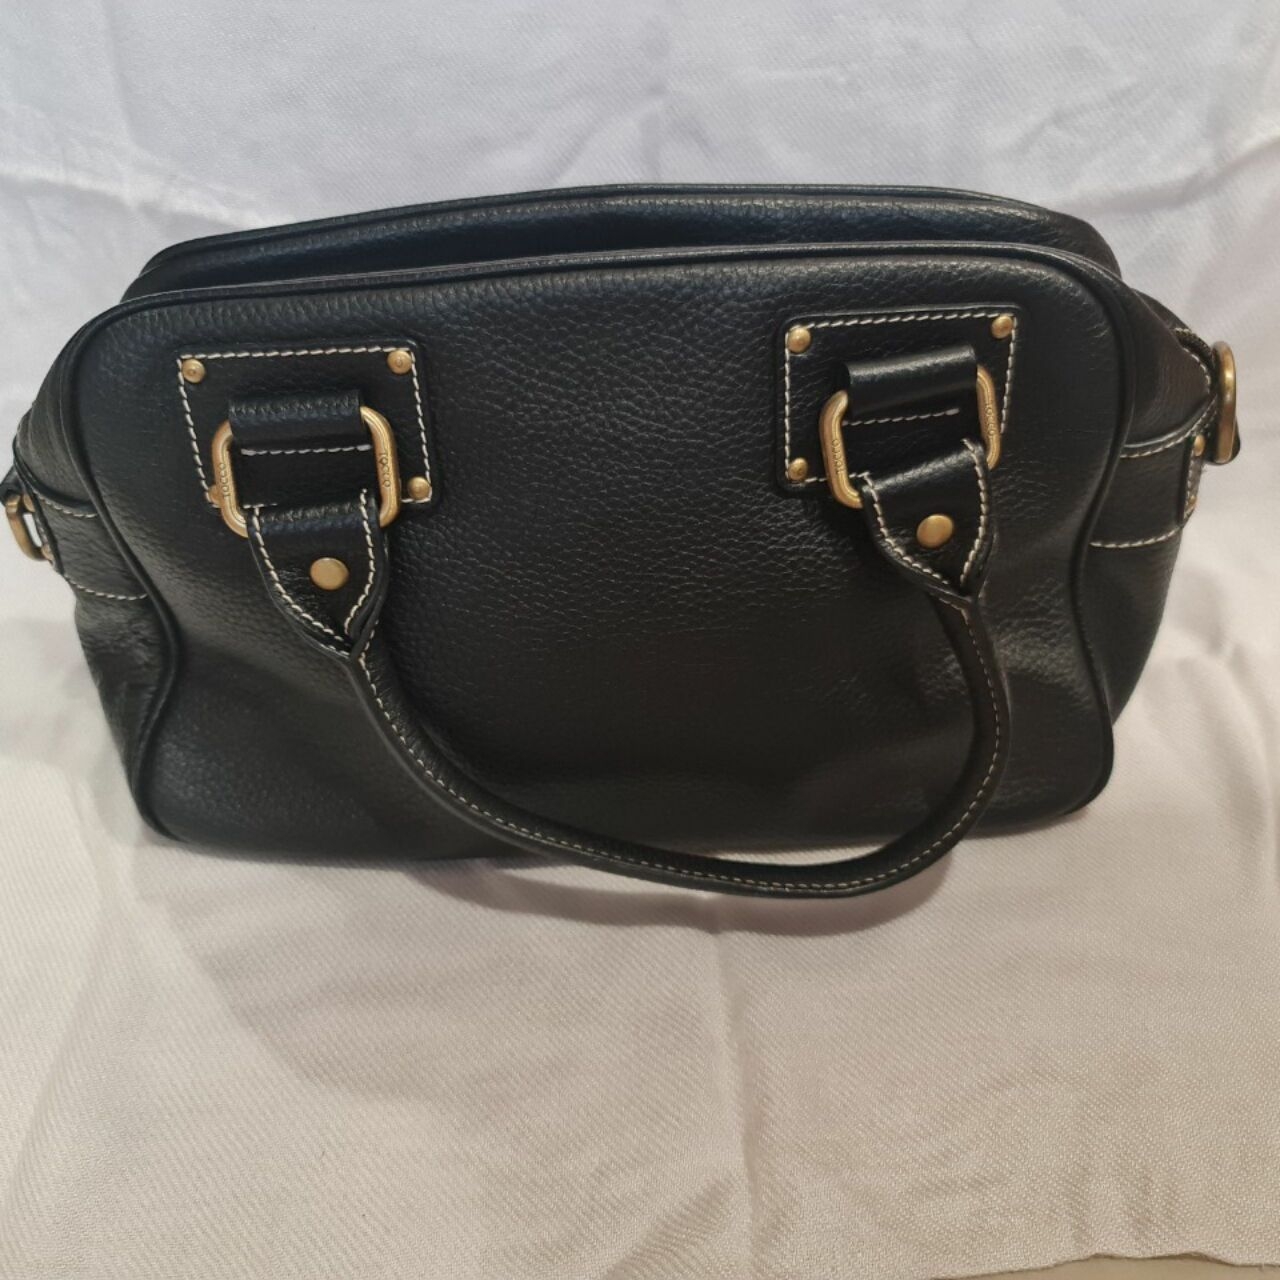 Tocco Toscano Black Handbag